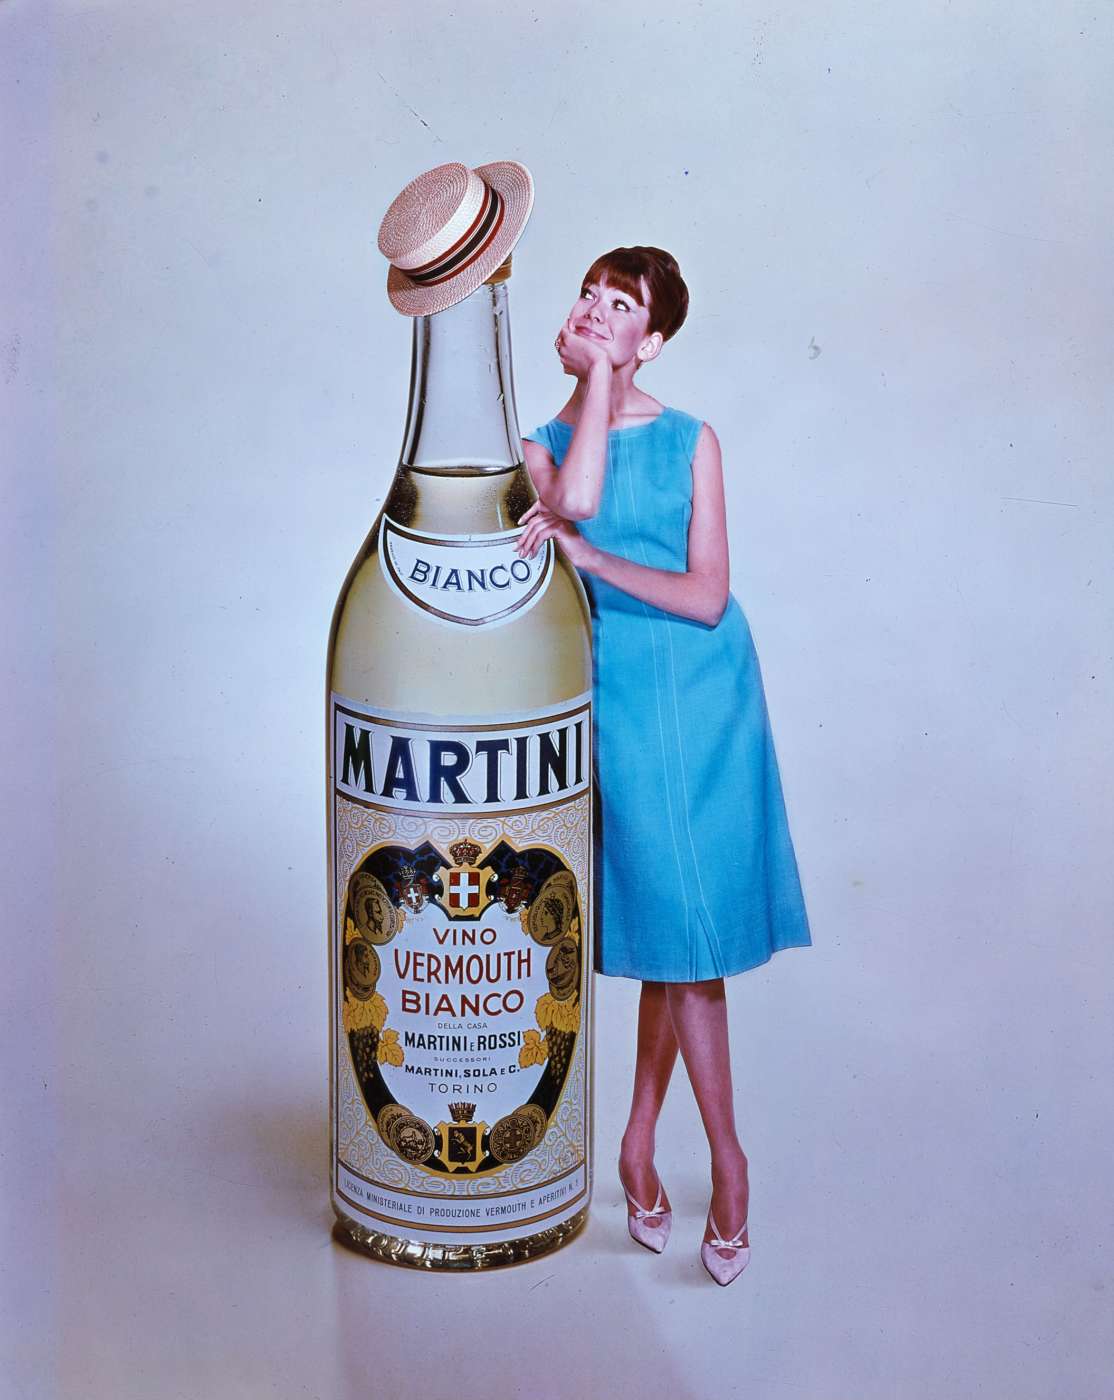 110 nuovi cocktail per festeggiare i 110 anni di Martini Bianco